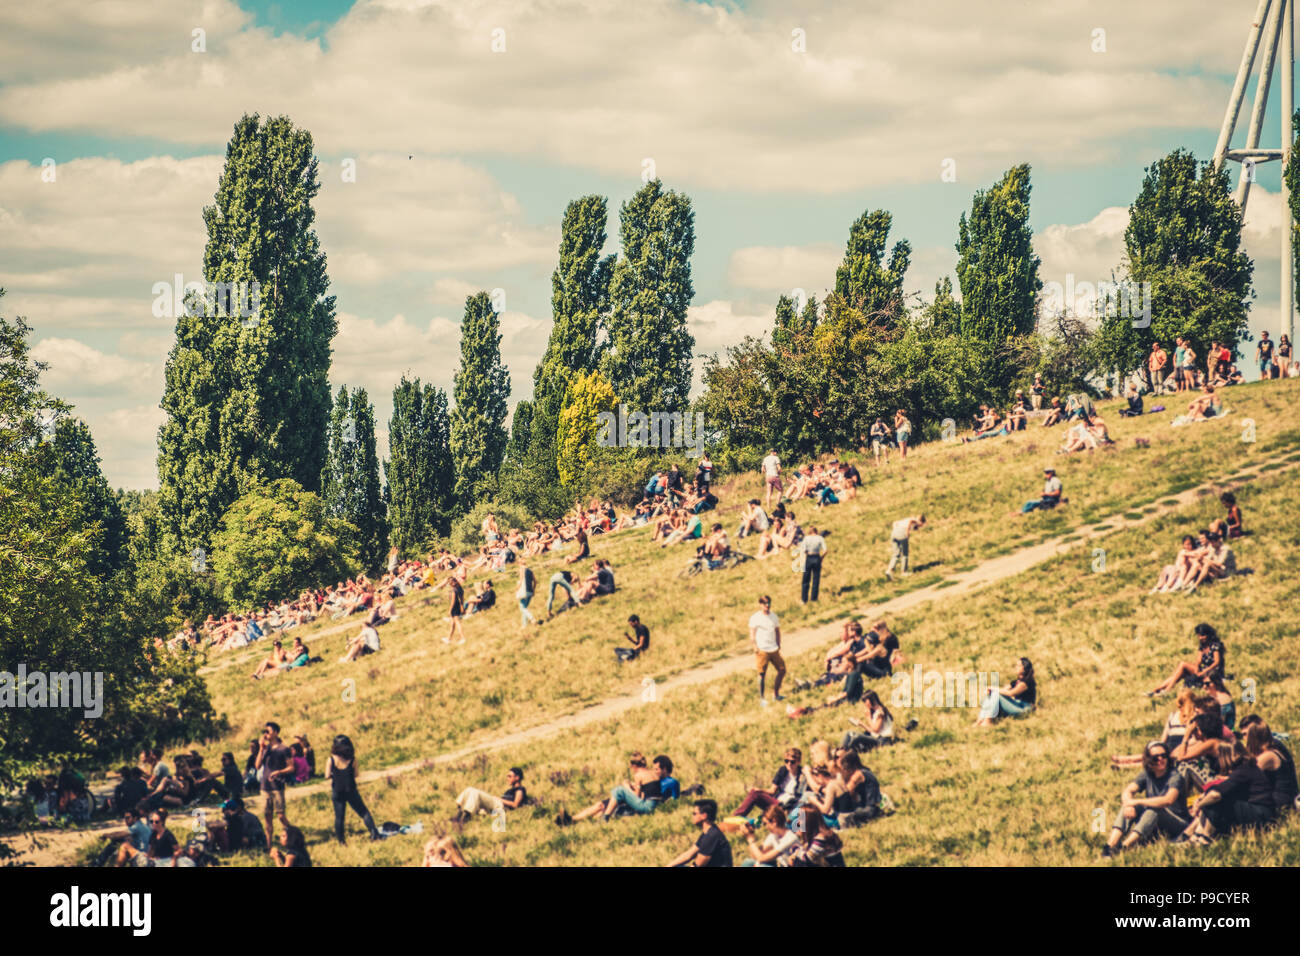 Berlin City Sommer Konzept - unscharfes Bild von Menschen in überfüllten Park (Mauerpark) an einem sonnigen Sommertag - Stockfoto